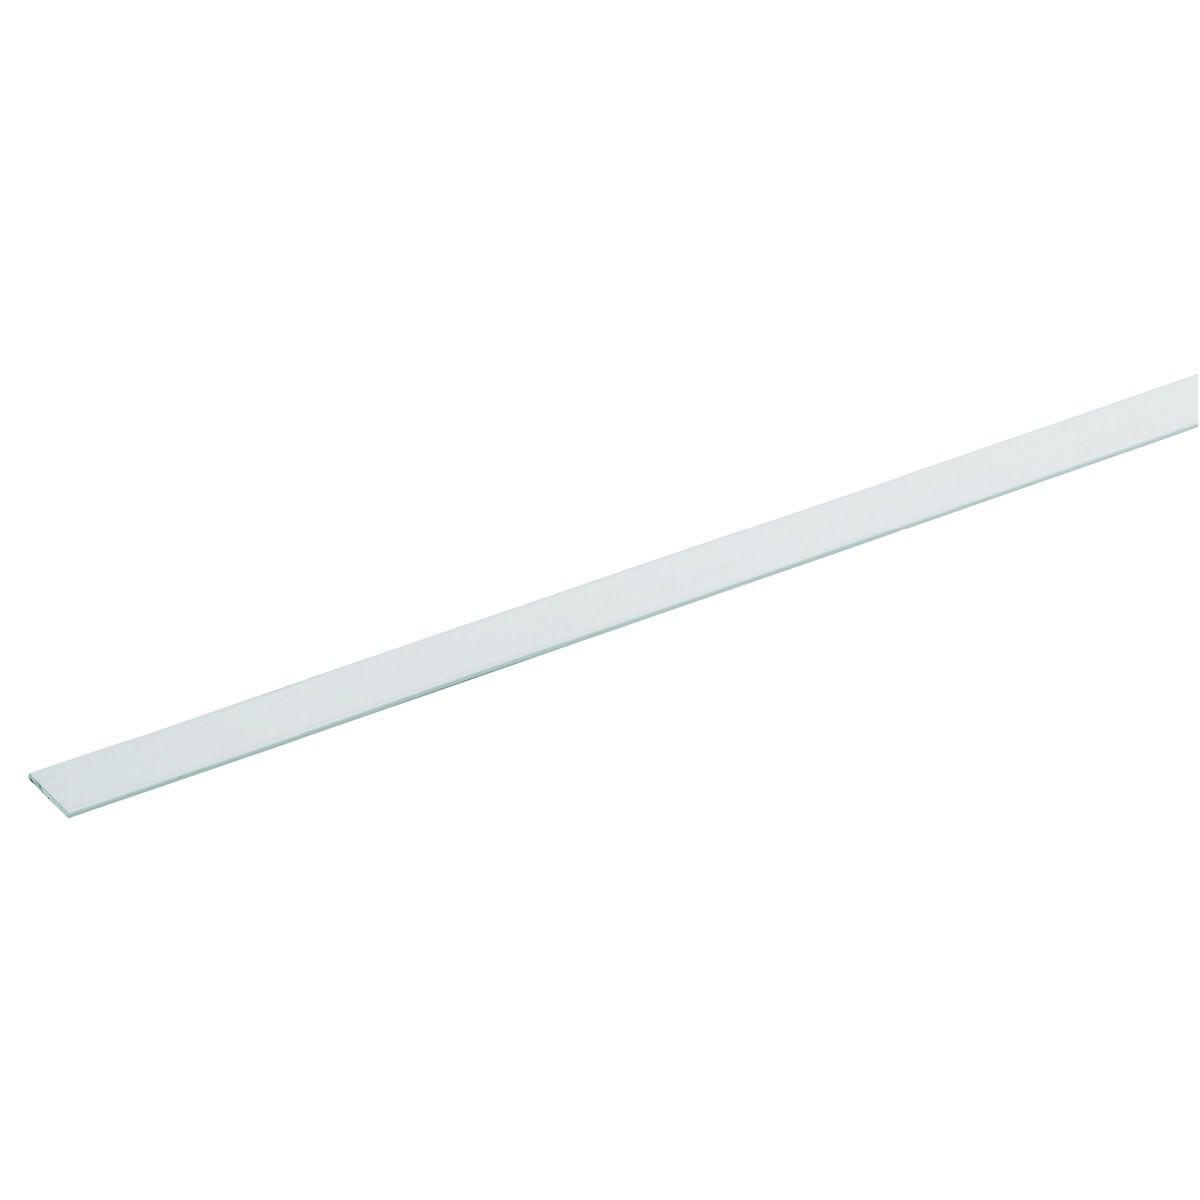 Wickes 19.5mm Multi-Purpose Flat Bar - White PVCu